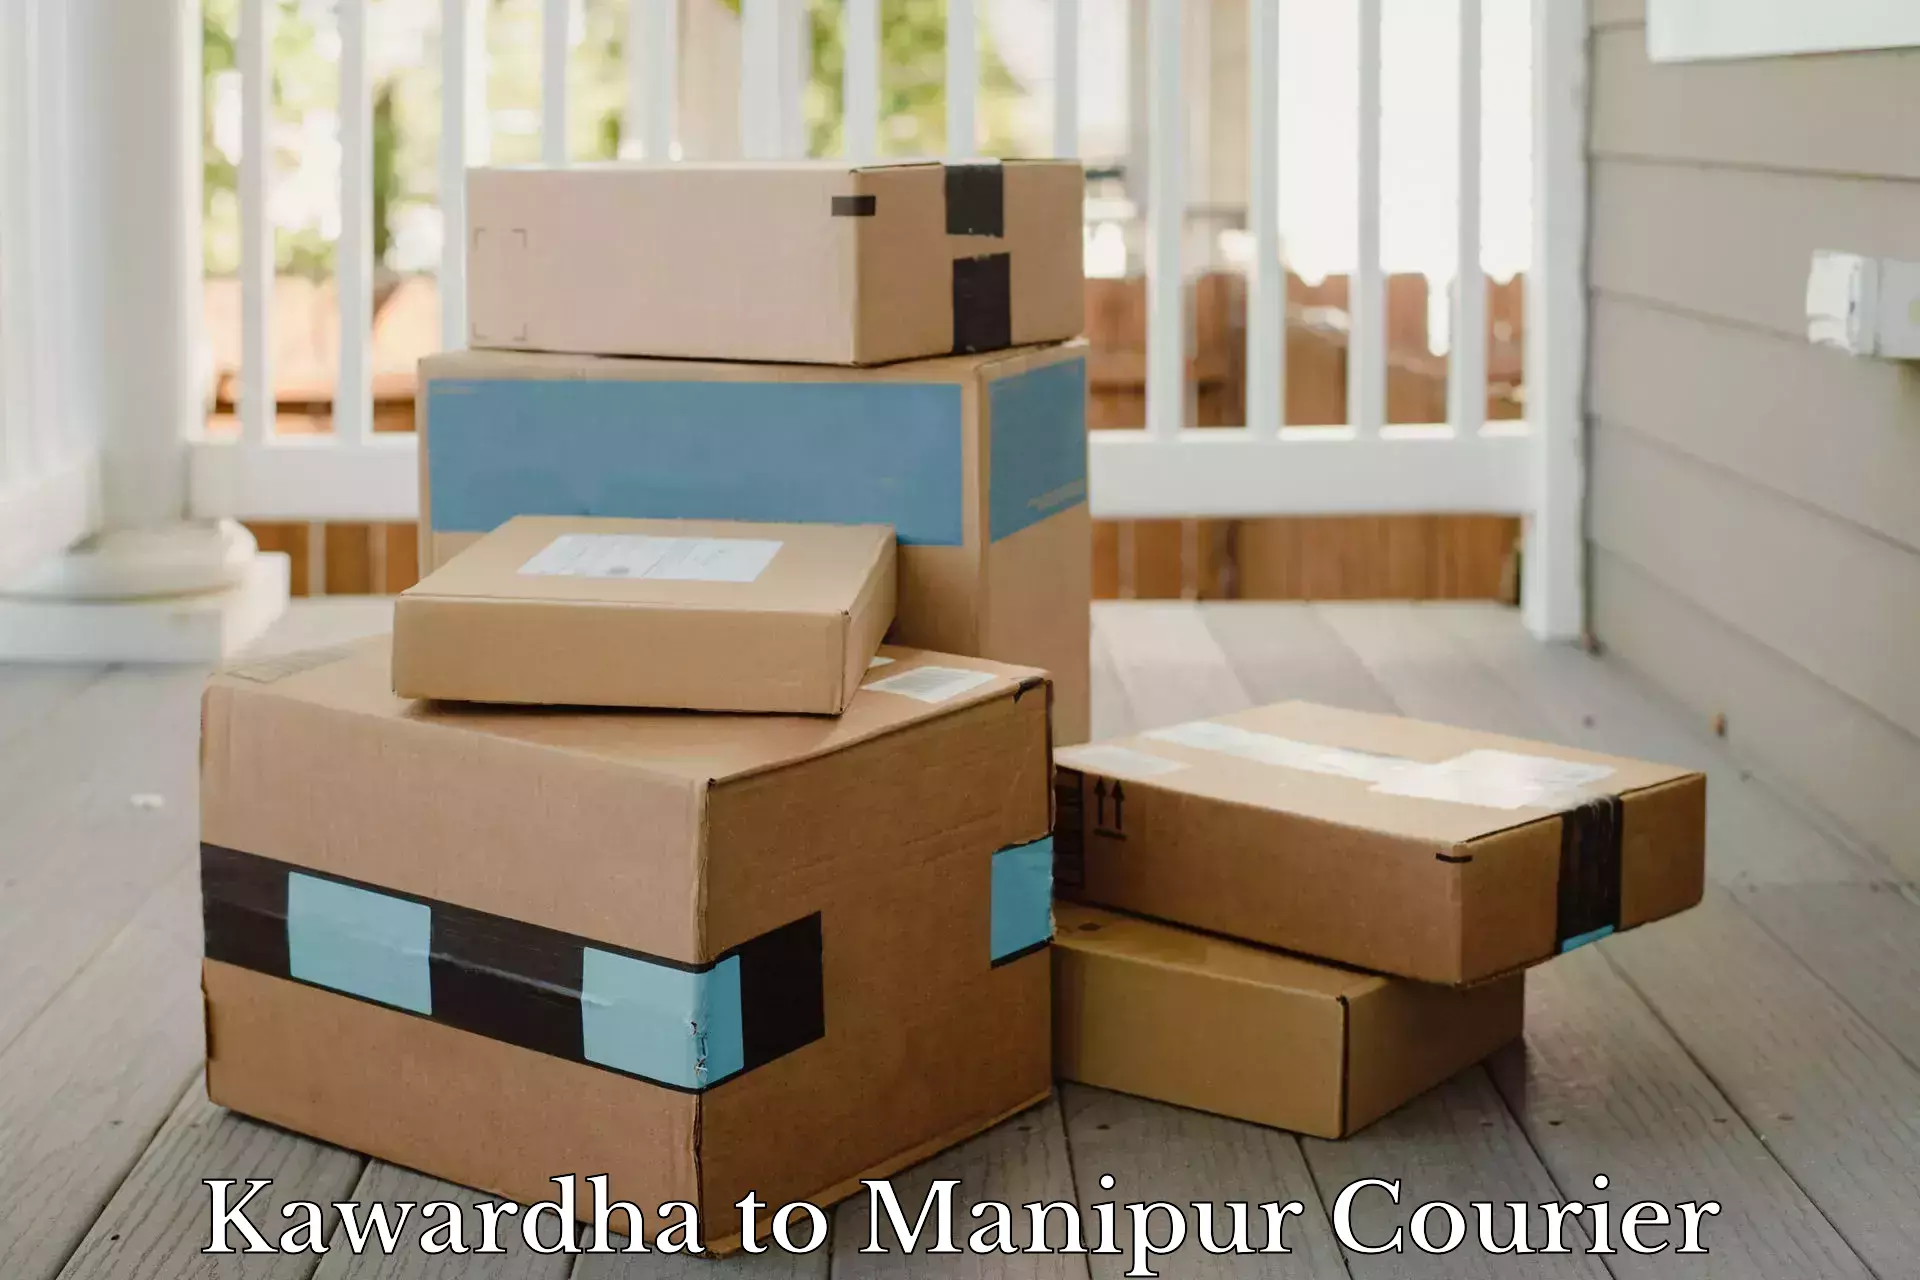 Affordable shipping solutions Kawardha to Moirang